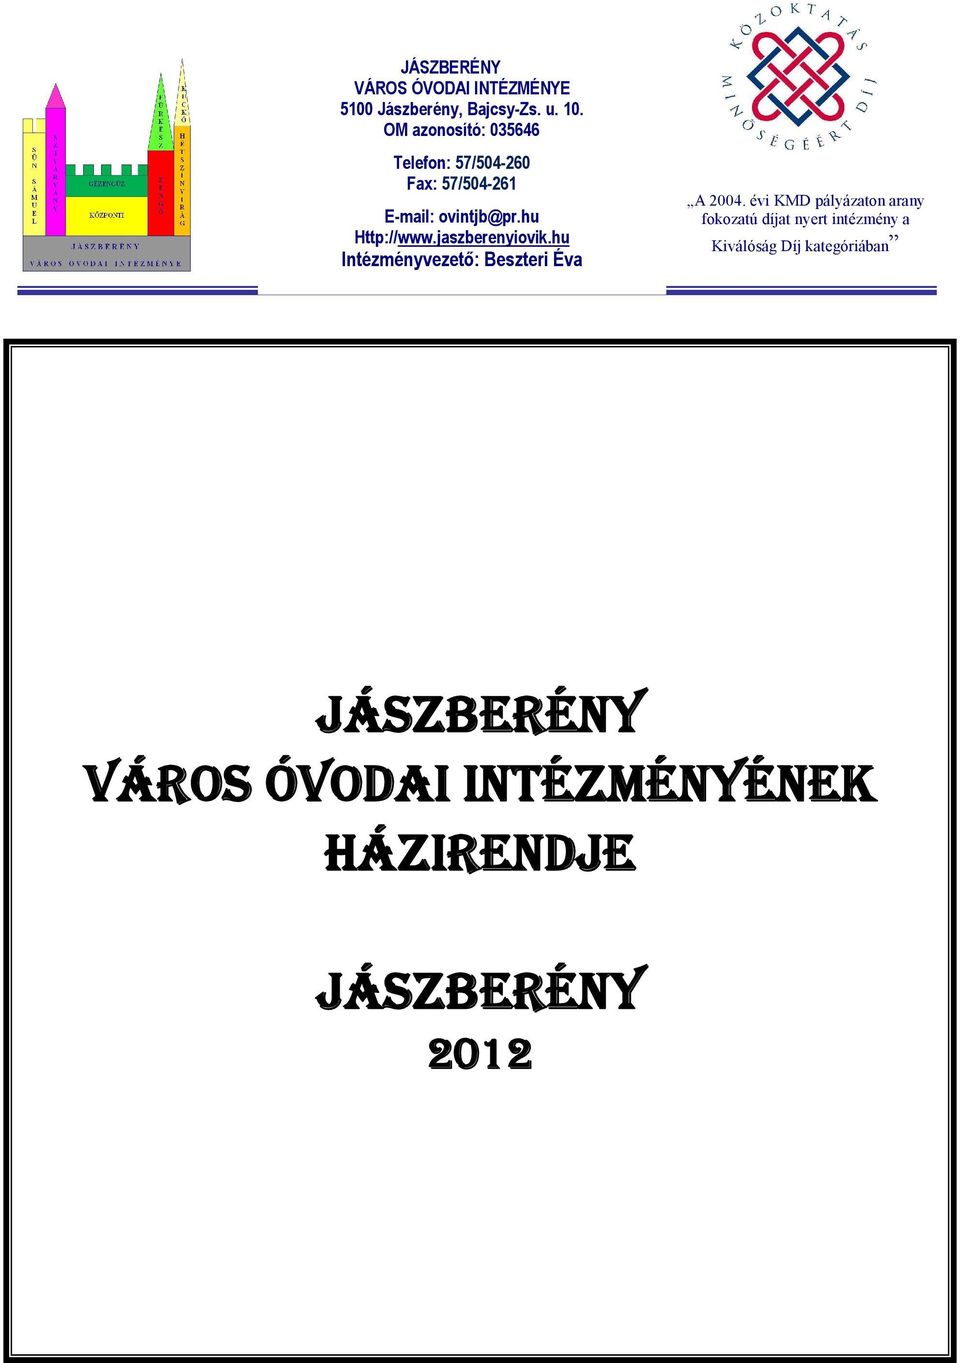 jaszberenyiovik.hu Intézményvezető: Beszteri Éva A 2004.